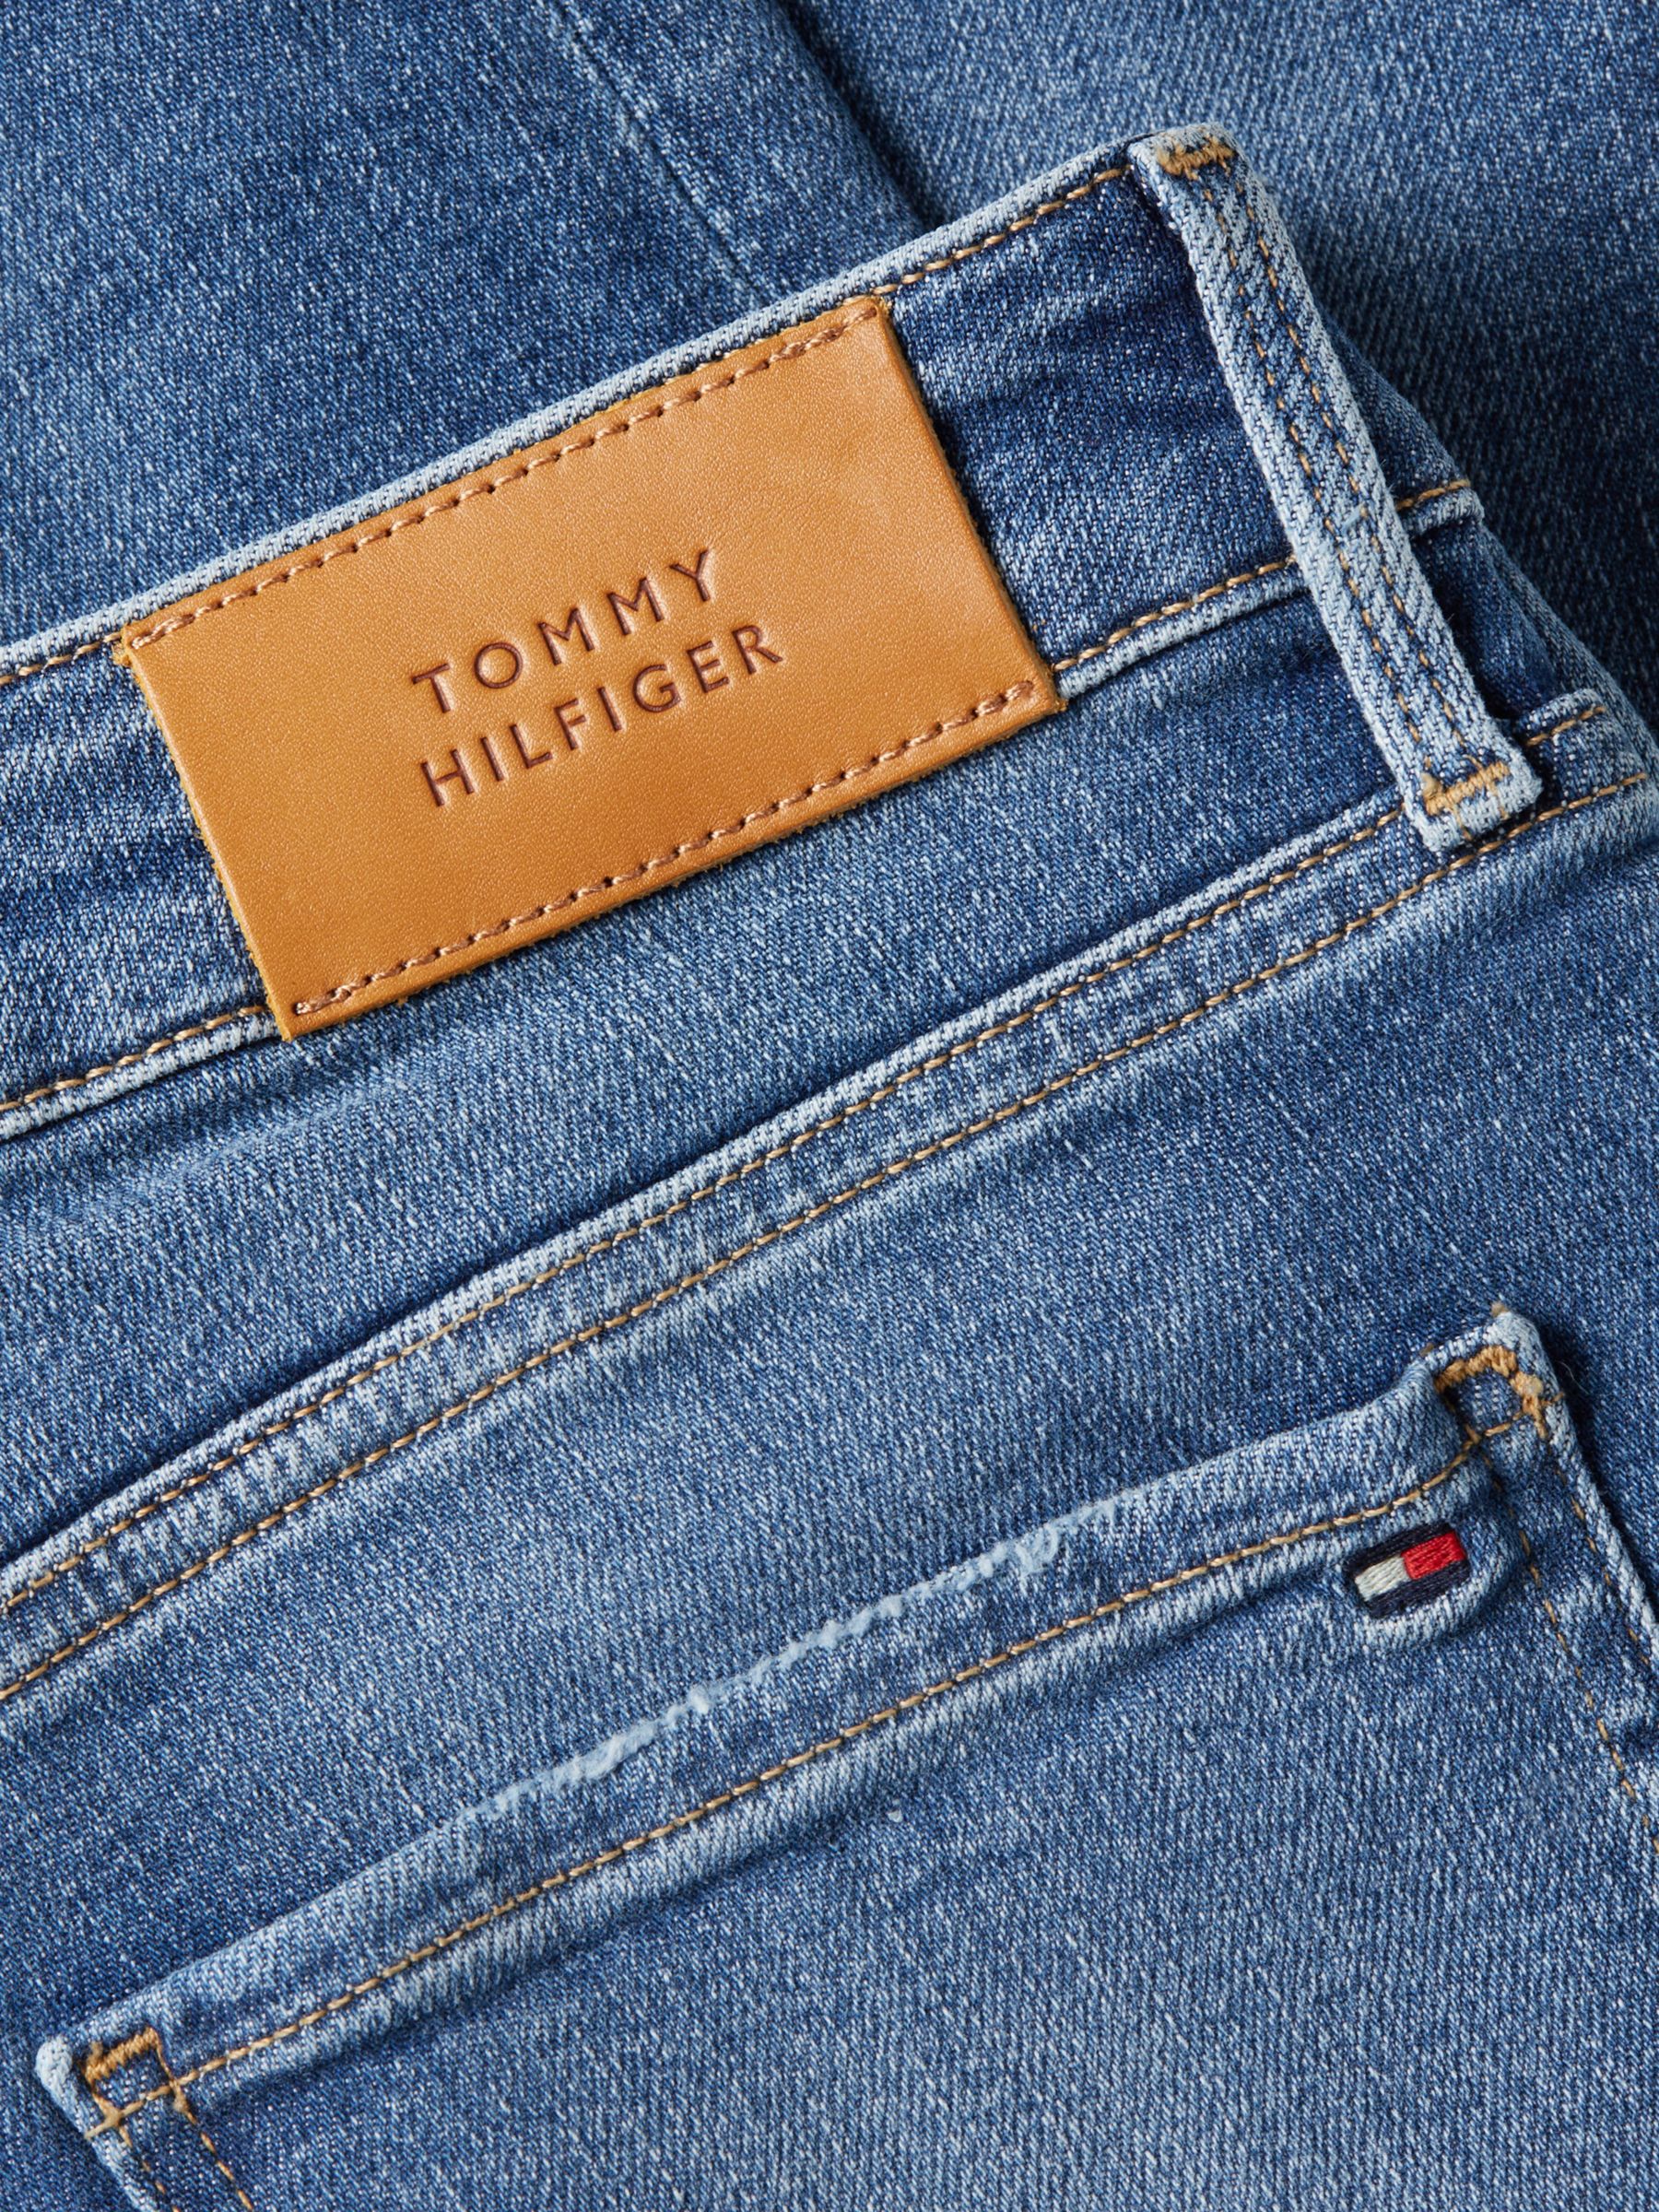 Tommy Hilfiger Curve Harlem Leo Partners Lewis Jeans, Skinny at Rise & John High